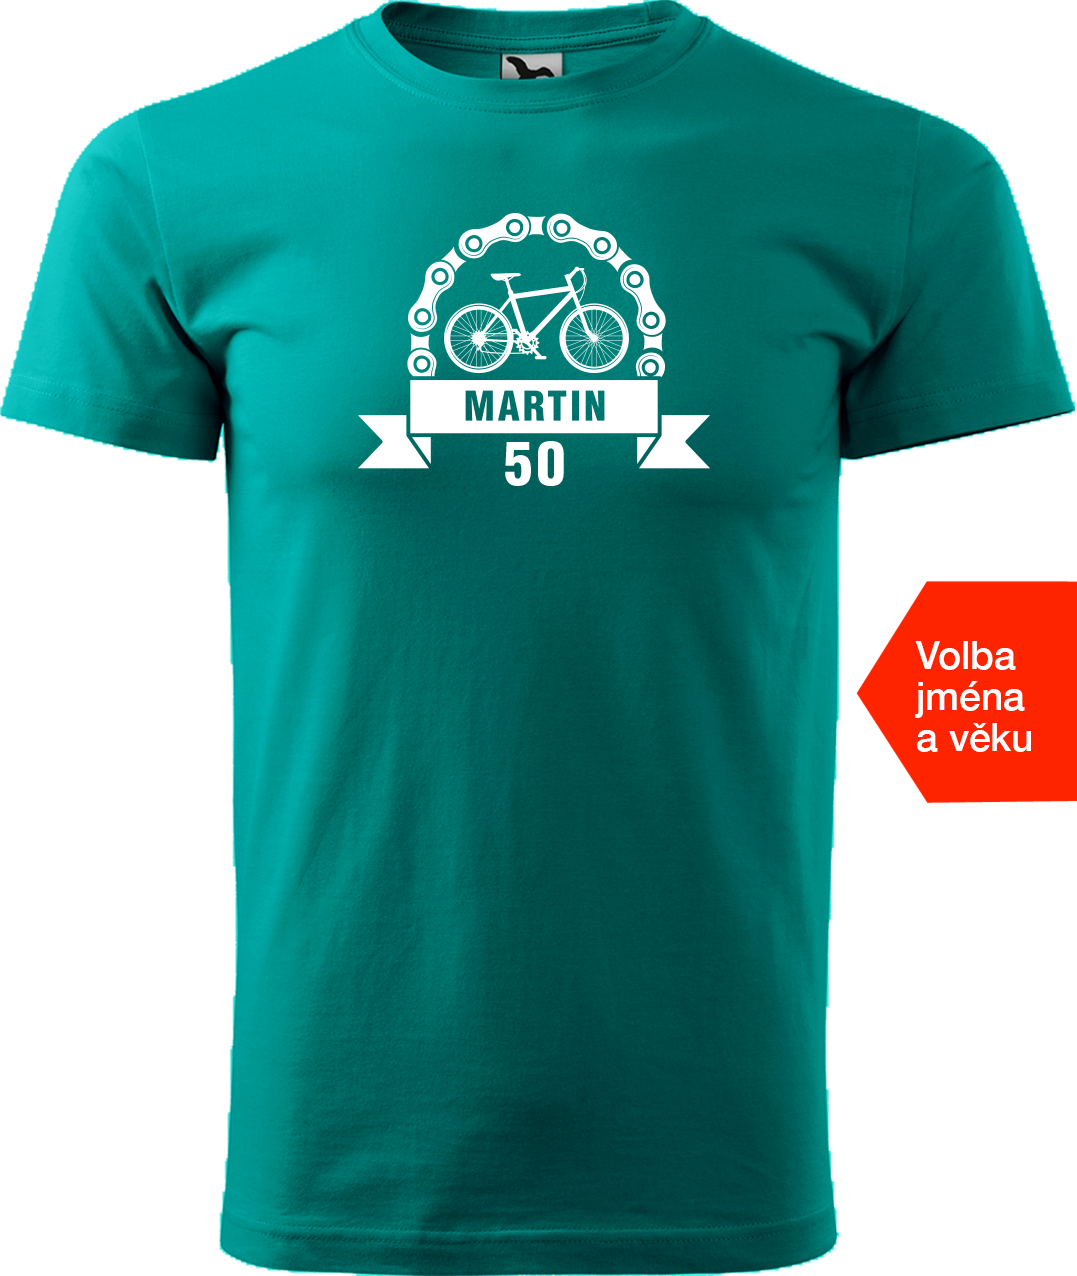 Pánské tričko pro cyklistu se jménem a věkem - Blahopřání Velikost: XL, Barva: Emerald (19)